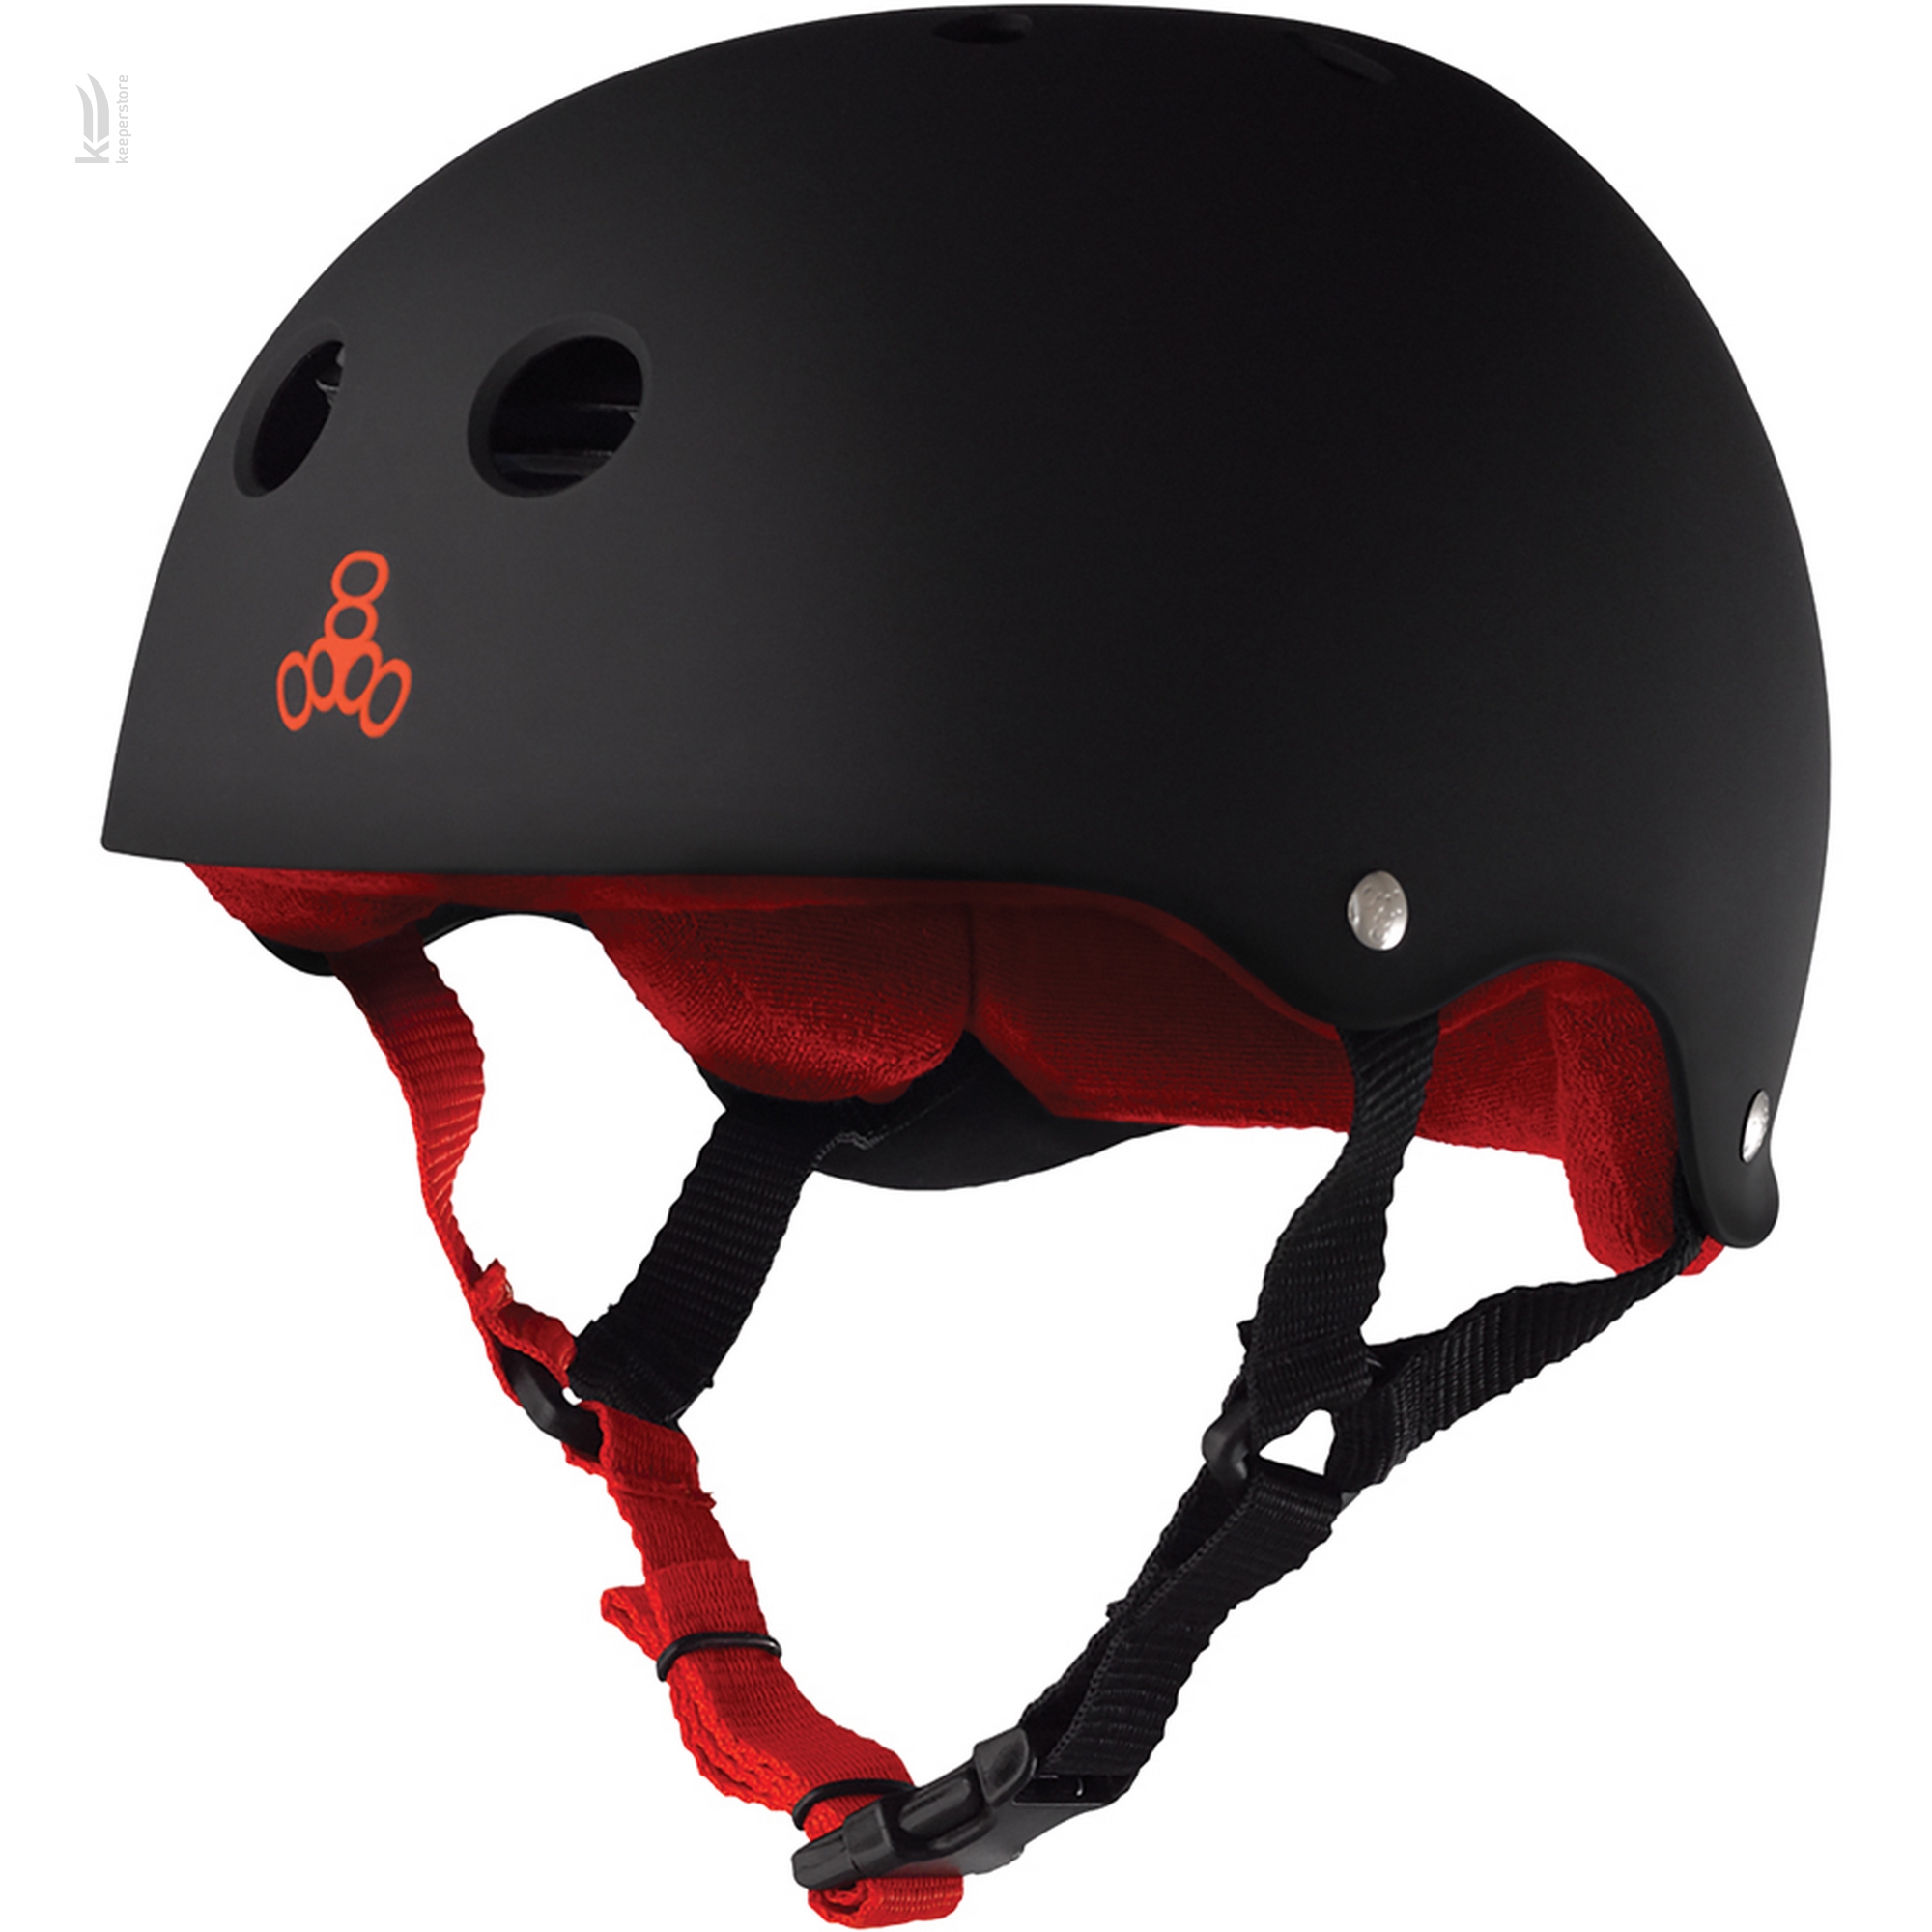 Шлем для скейтбординга Triple8 Sweatsaver Helmet Black w/ Red (L)